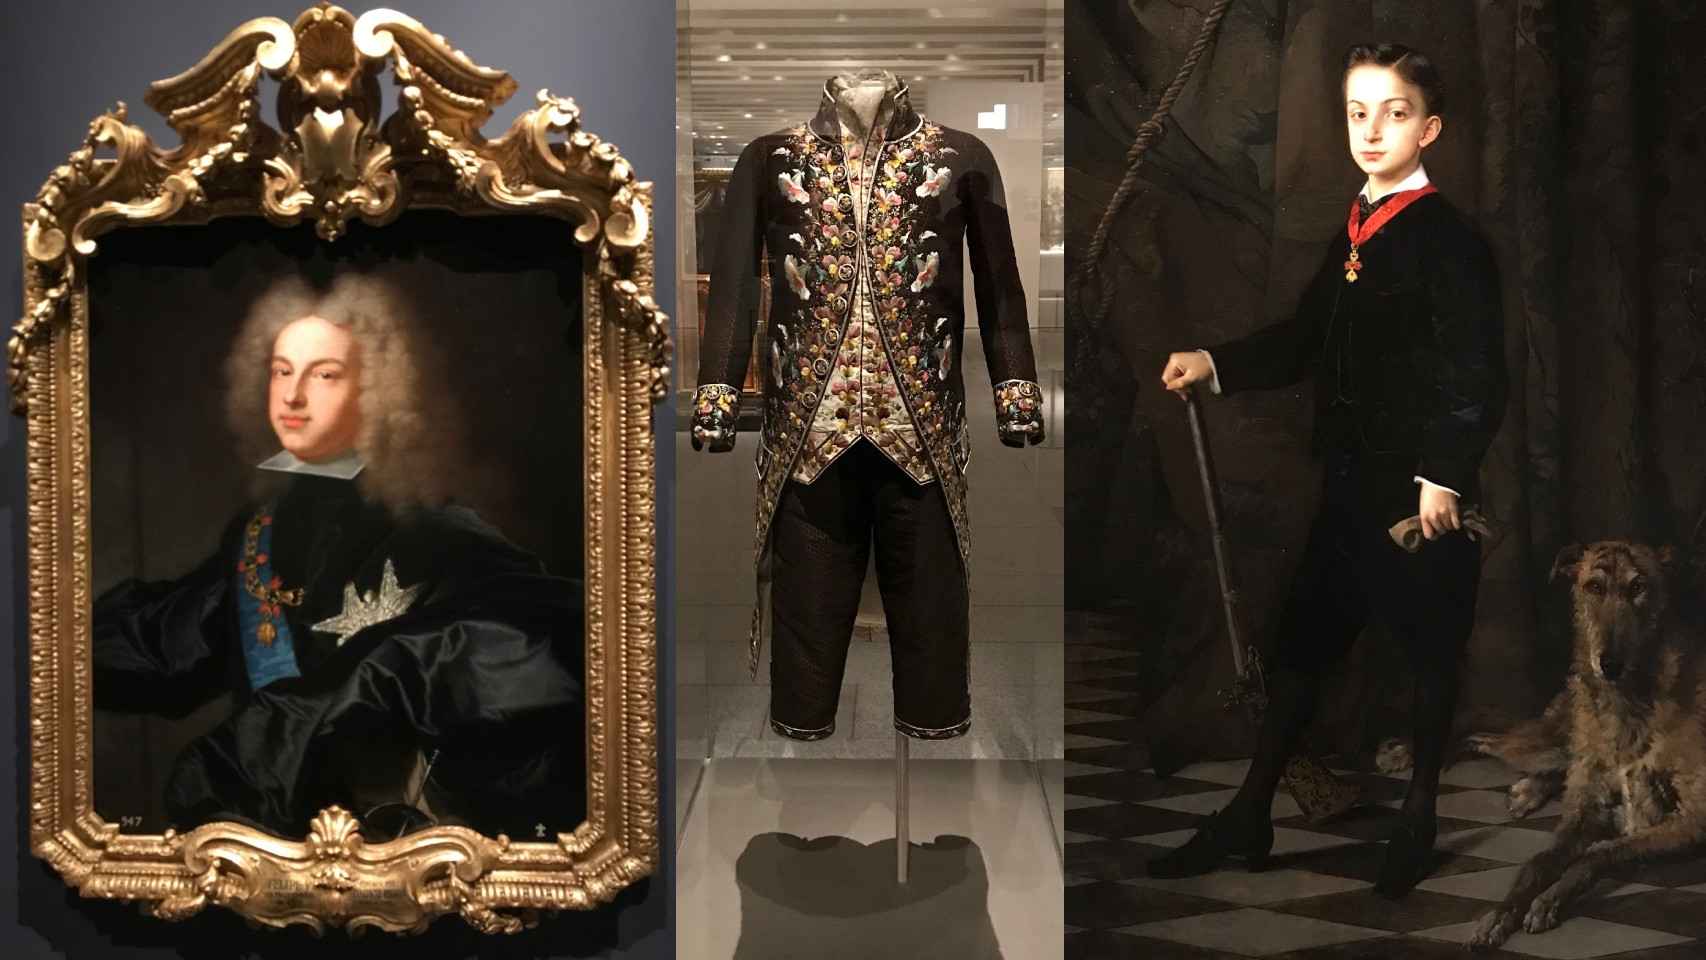 Retratos de Felipe V (1701) y el entonces príncipe Alfonso (1869) y traje de hombre de finales del XVIII - Galería de Colecciones Reales (GCR).